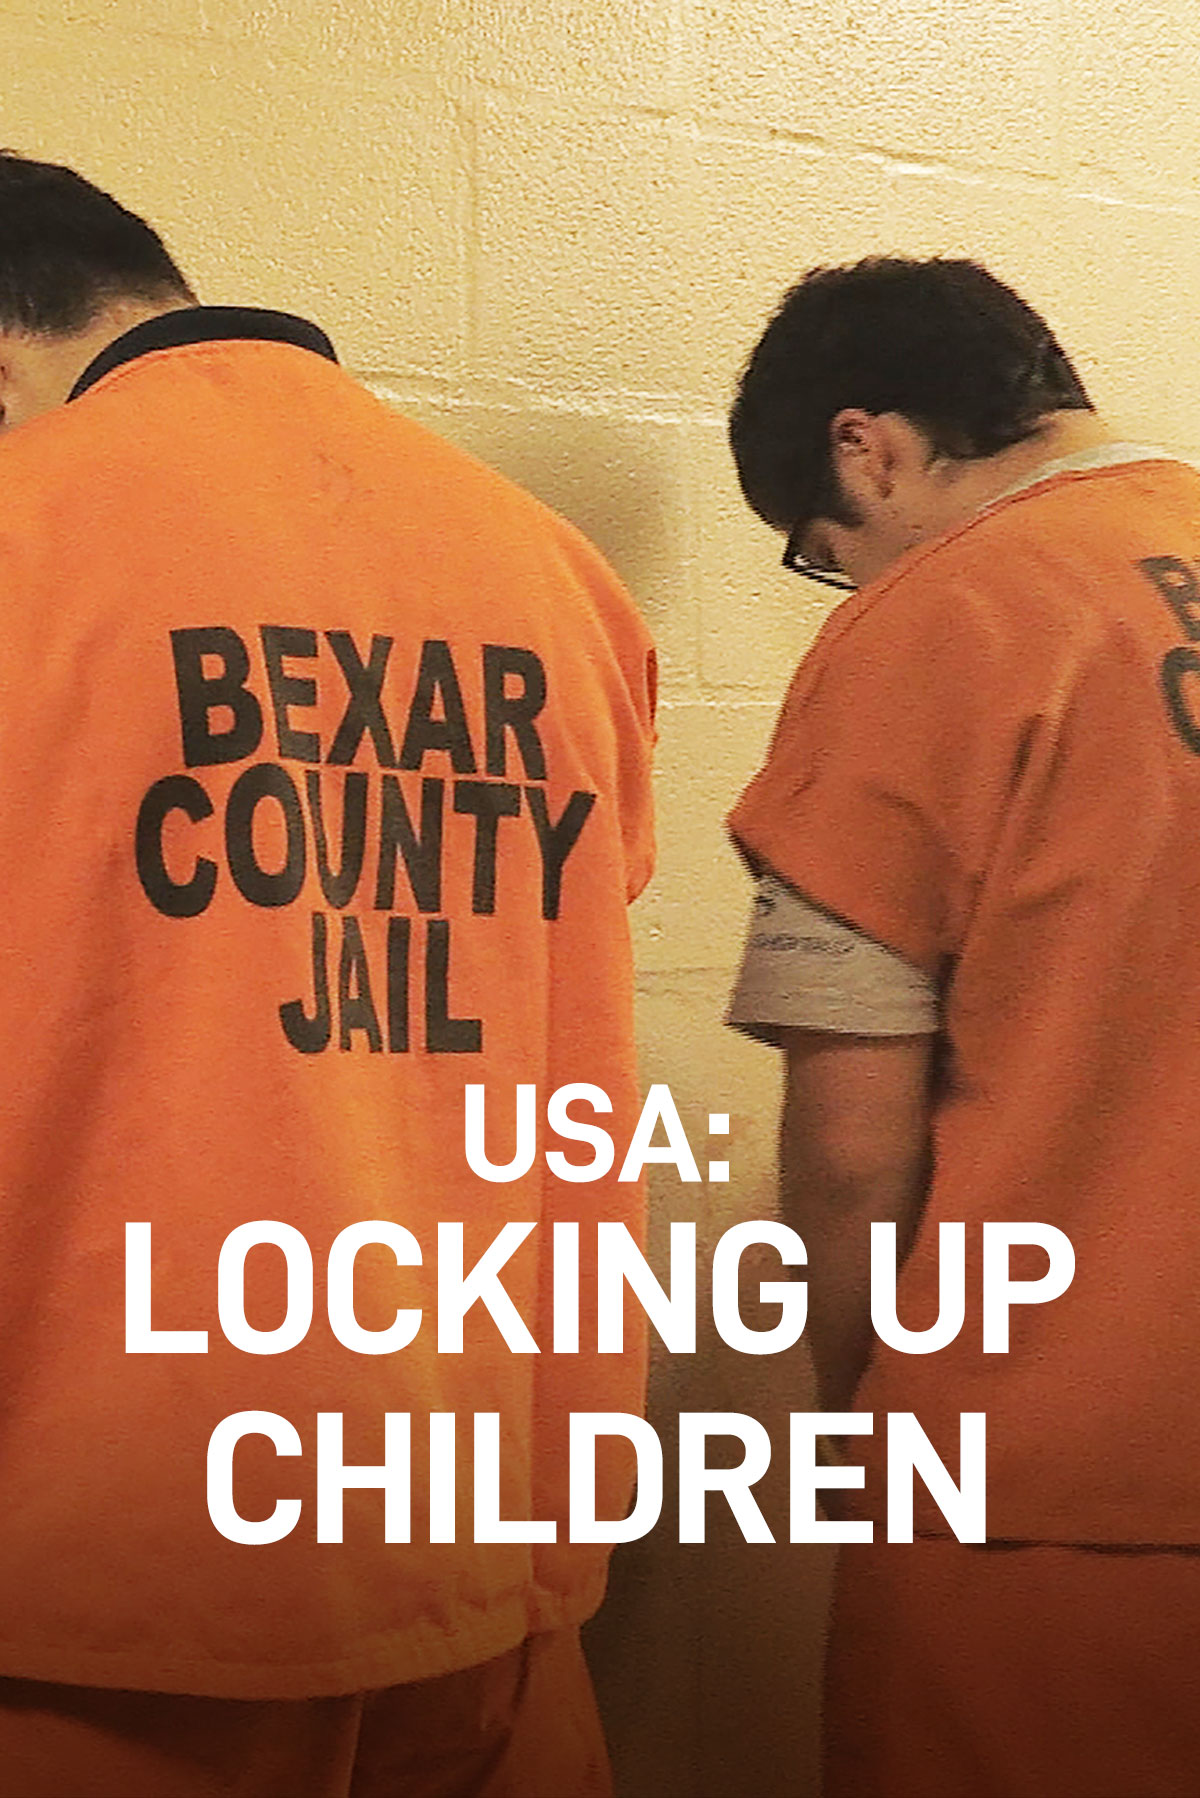 USA: Locking Up Children